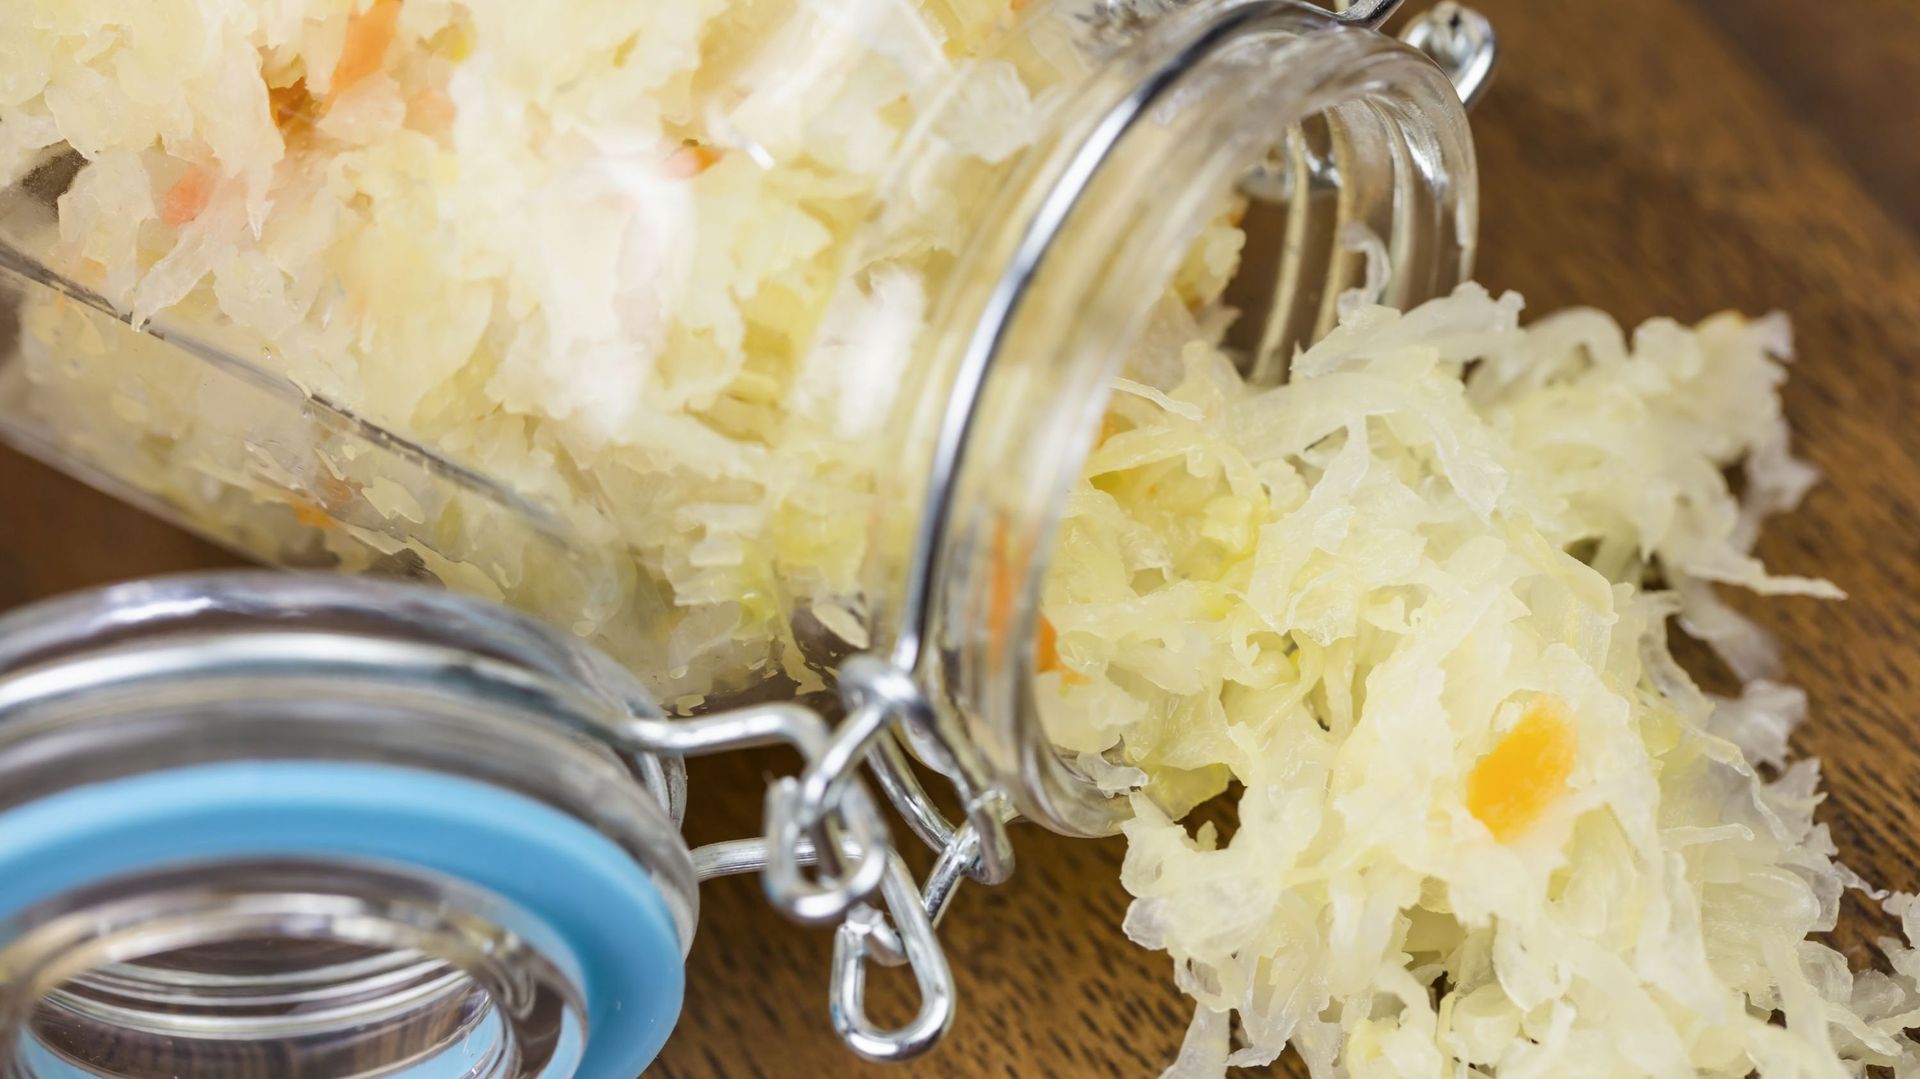 Homemade sauerkraut in a jar